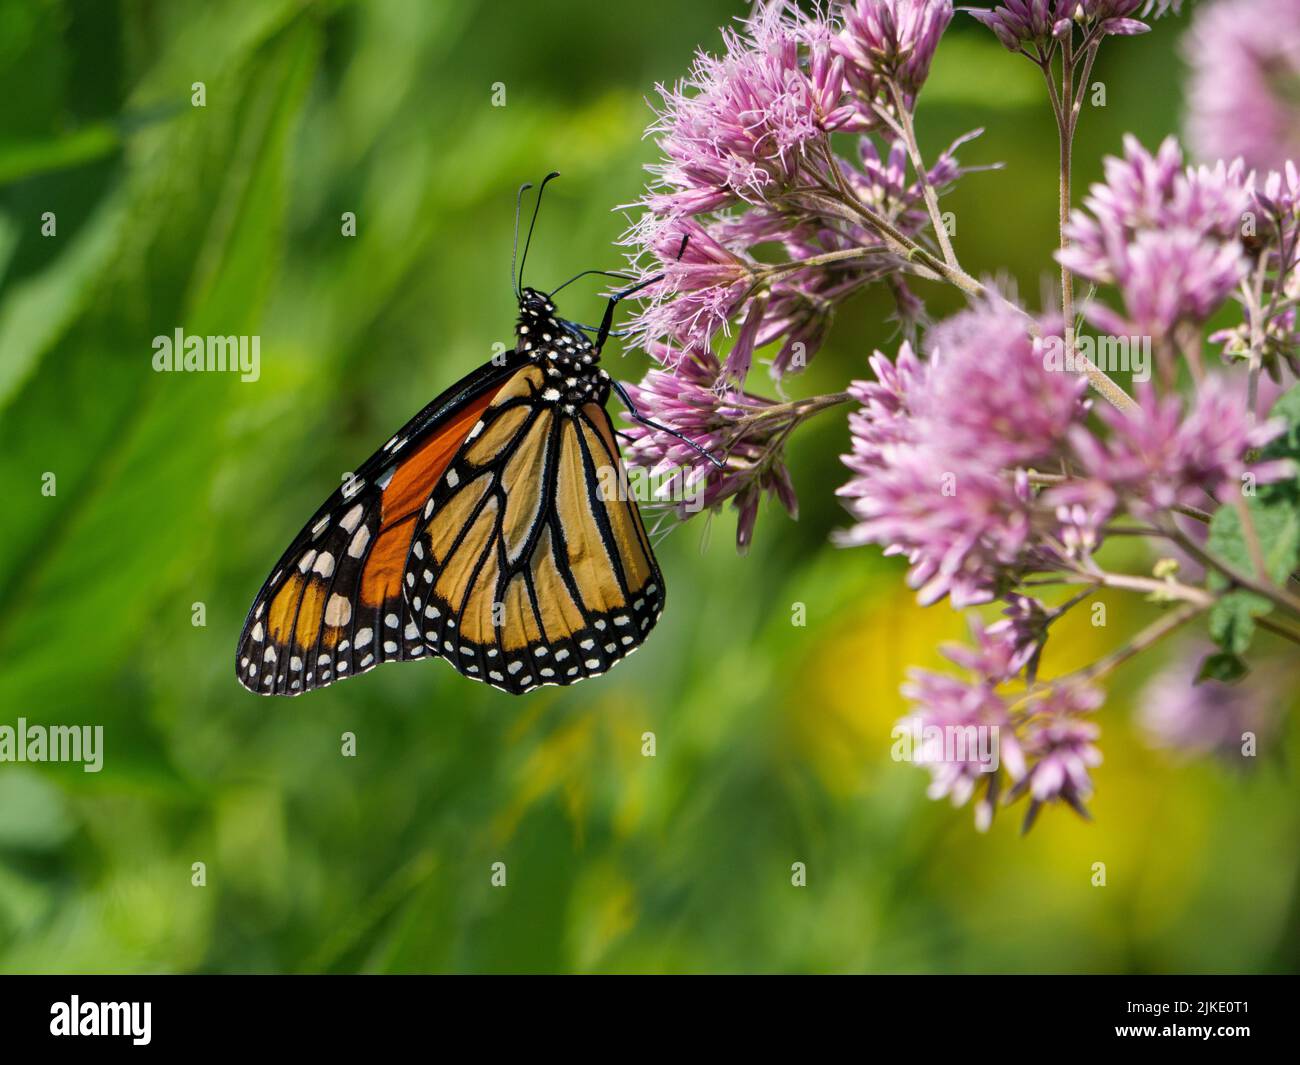 Monarch butterfly on sweet Joe-Pye weed flowers. Stock Photo